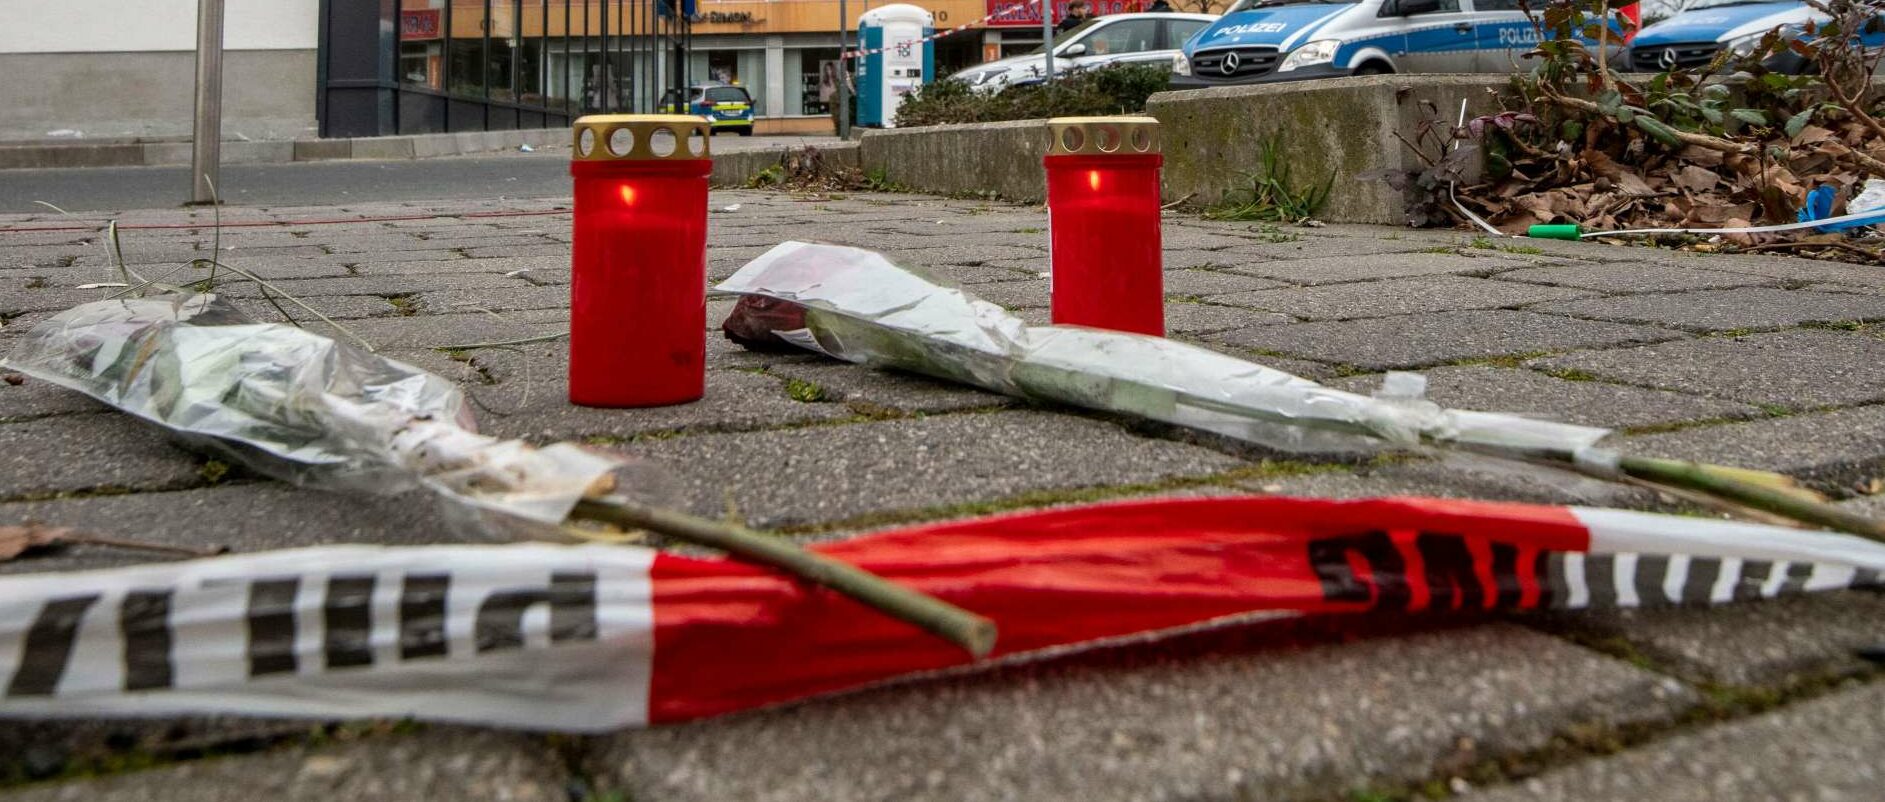 Rechtsextreme Anschläge, wie jener am 19. Februar in Hanau, dürfen sich nicht wiederholen.